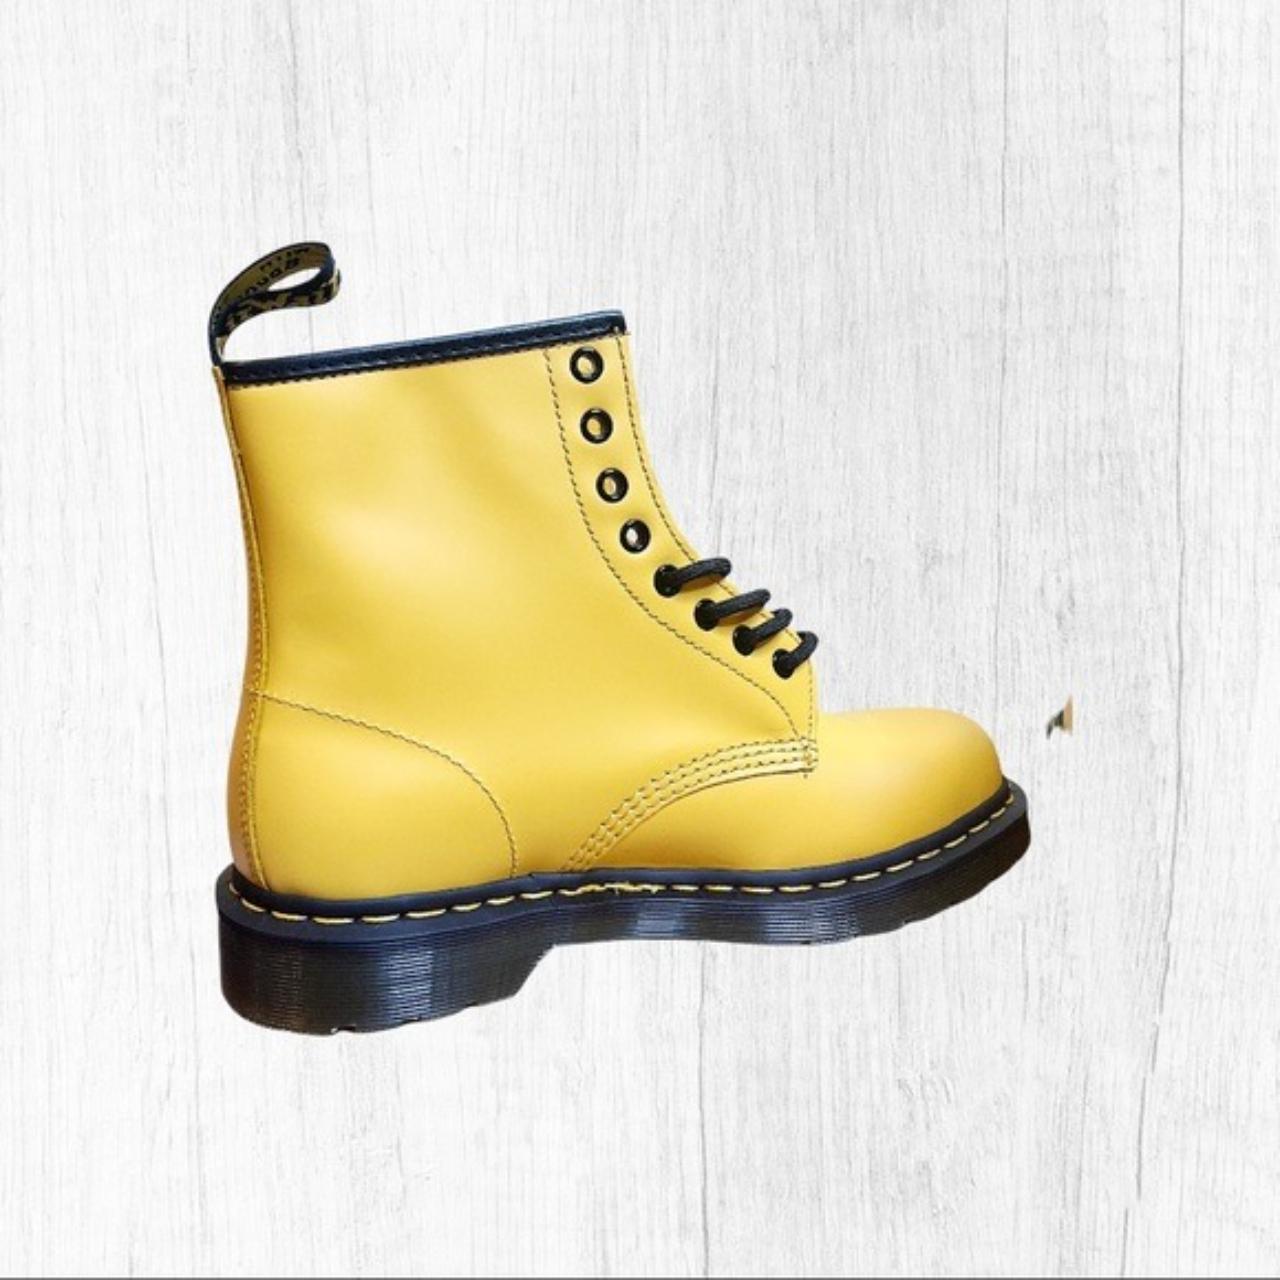 Dr.Martens 1460 yellow 8 eye boots New. Never... - Depop